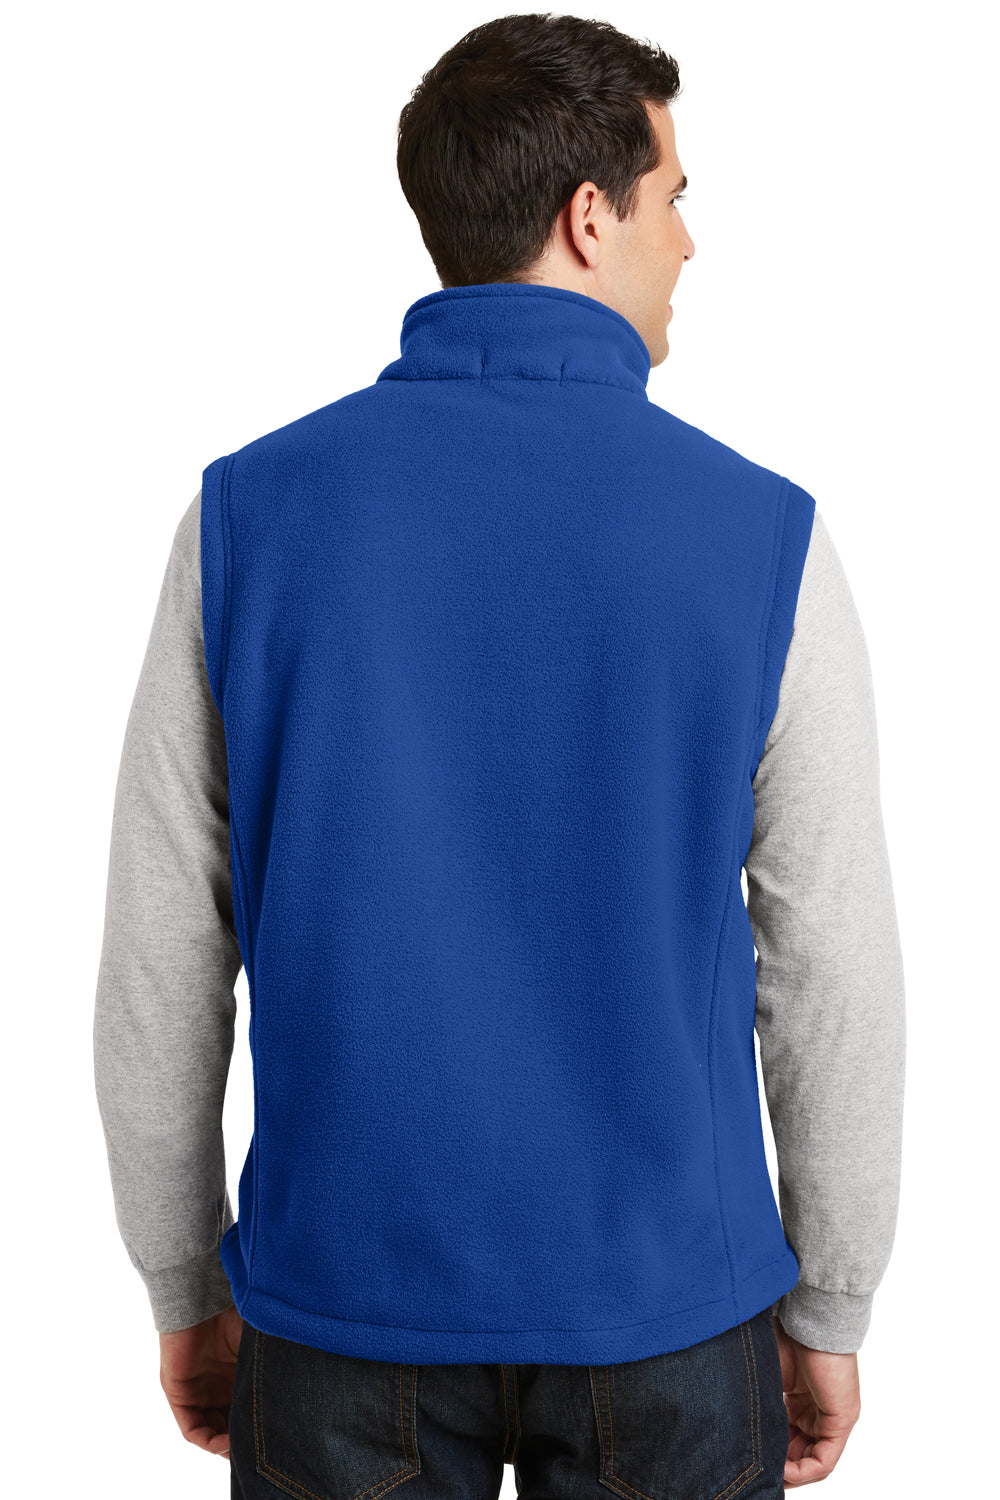 Port Authority F219 Mens Full Zip Fleece Vest Royal Blue Back